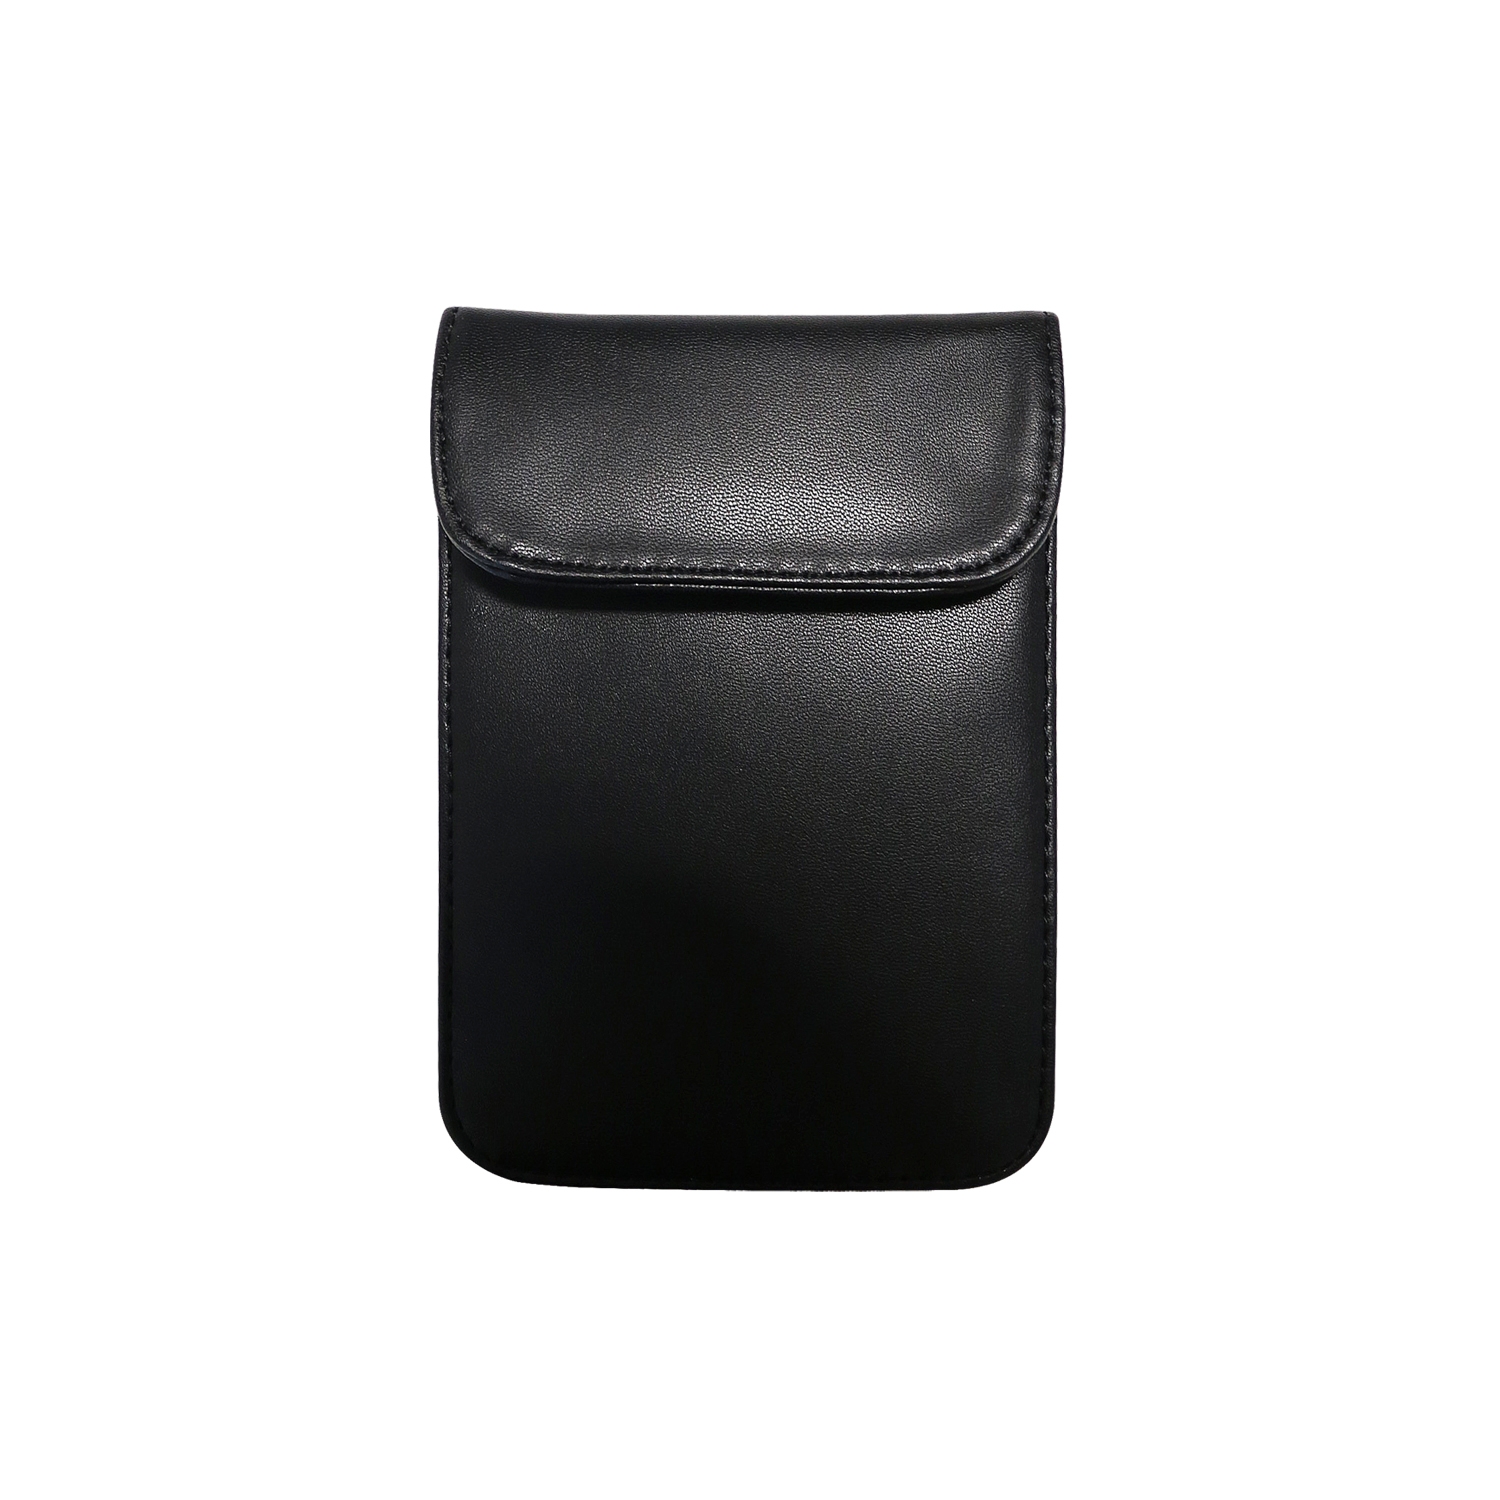 RFID Schutztasche für Smartphones und Autoschlüssel zur Abschirmung von Keyless-Go von HMF mit den Maßen 15 x 11 x 1.5 cm